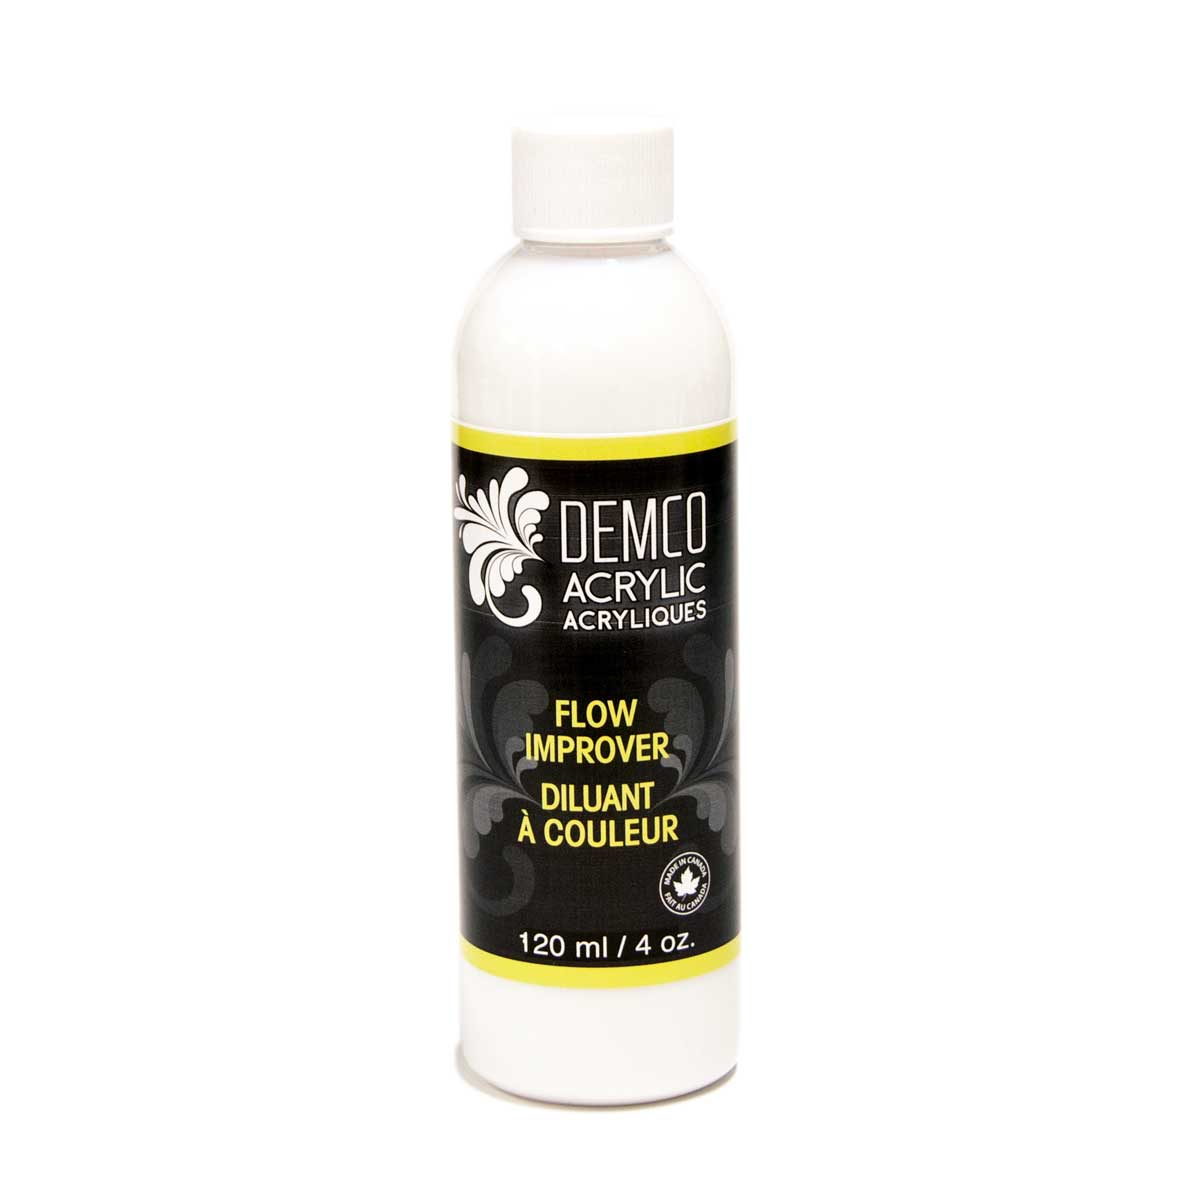 Demco Acrylic Flow Improver Medium 120 ml